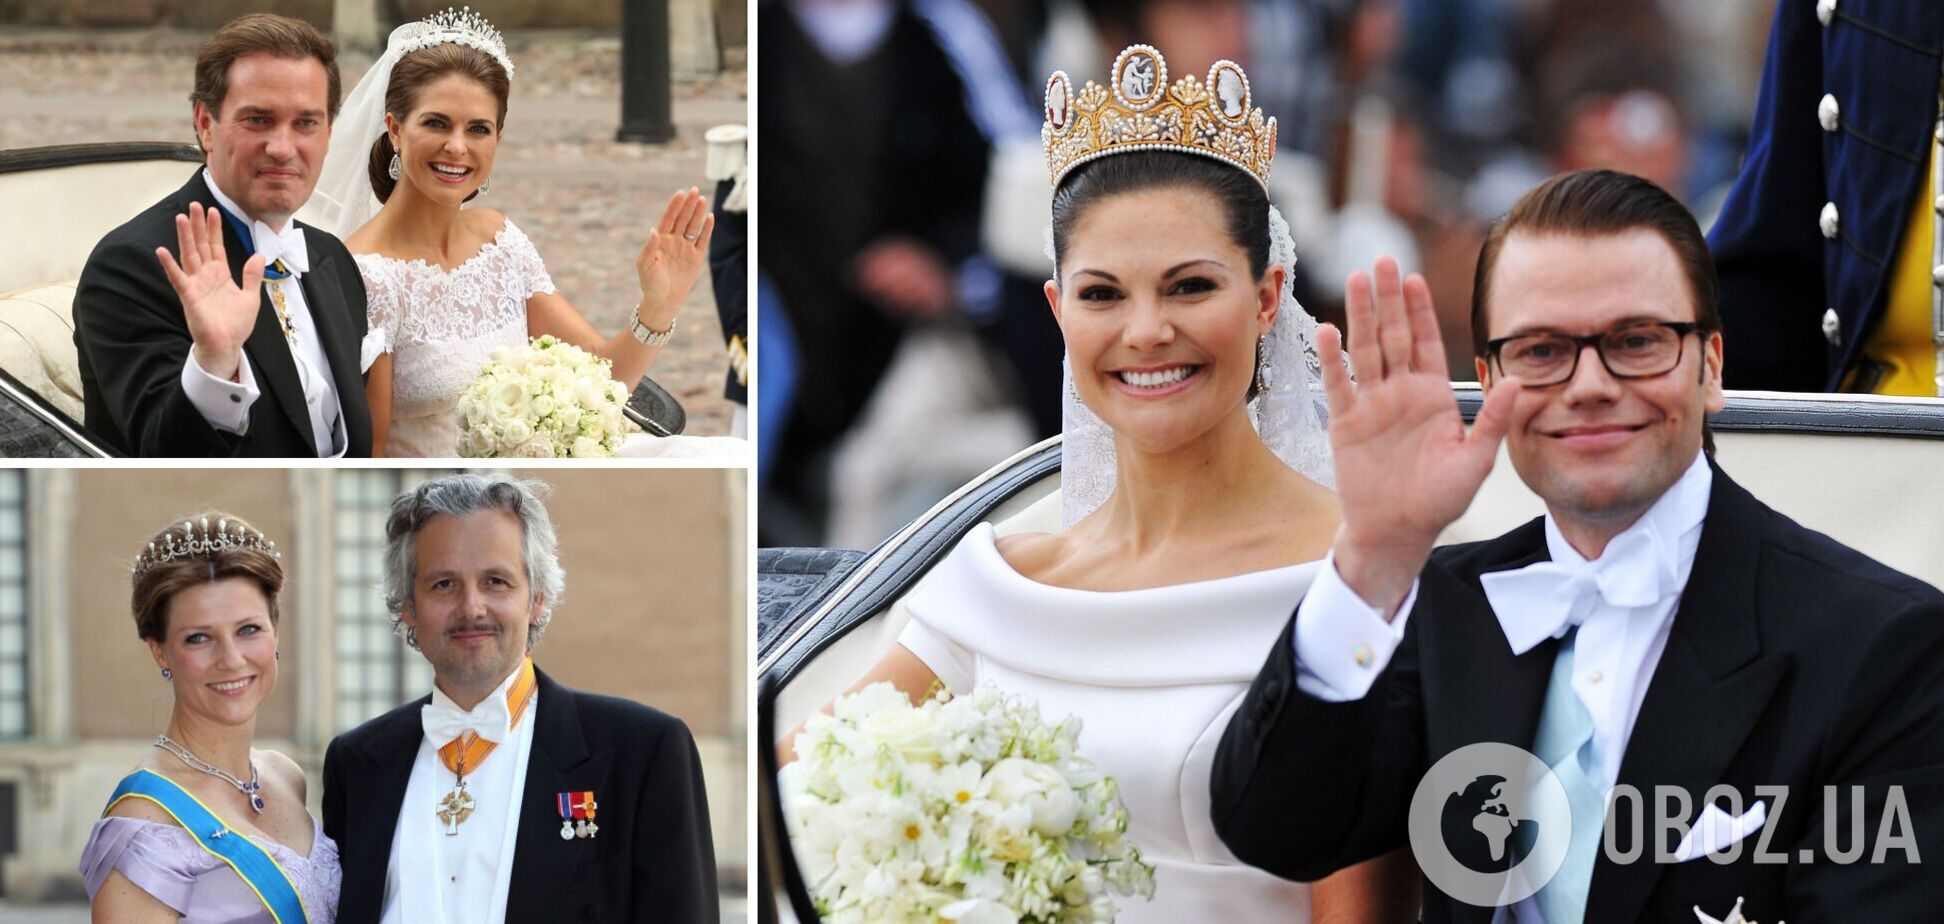 5 отважных принцесс, которые вышли замуж за простолюдинов. Как сложились их судьбы